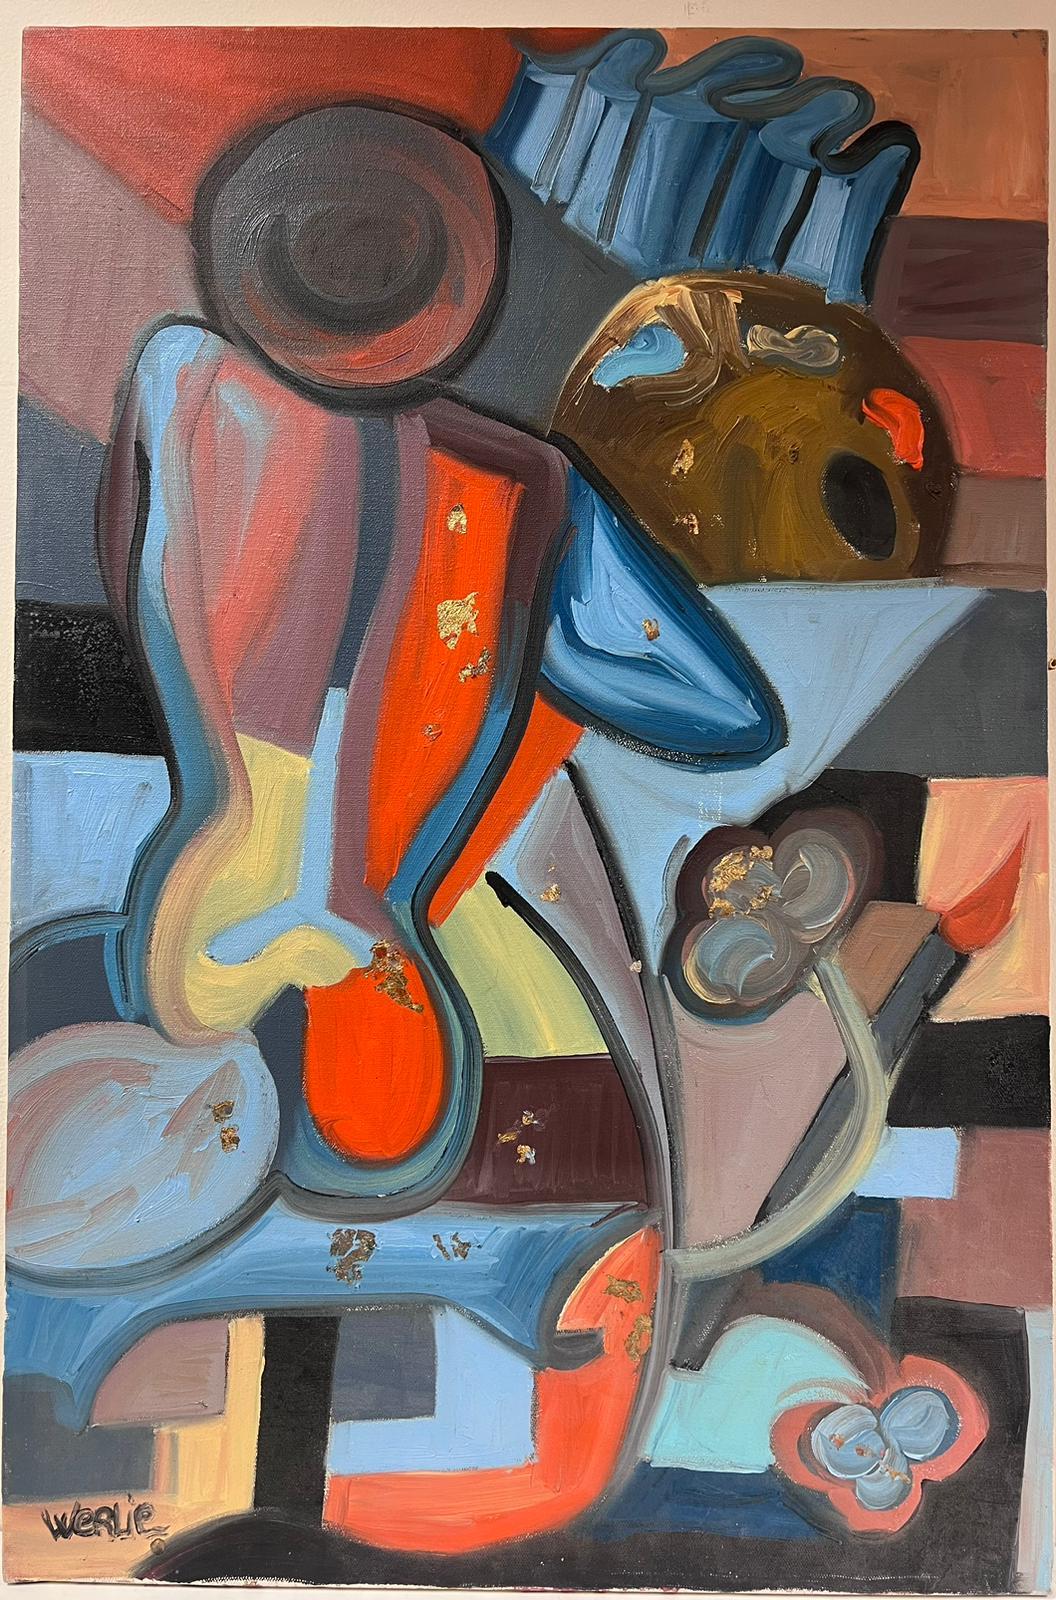 Großes abstraktes, mehrfarbiges Original-Ölgemälde im kubistischen Stil, signiert – Painting von Beatrice Werlie